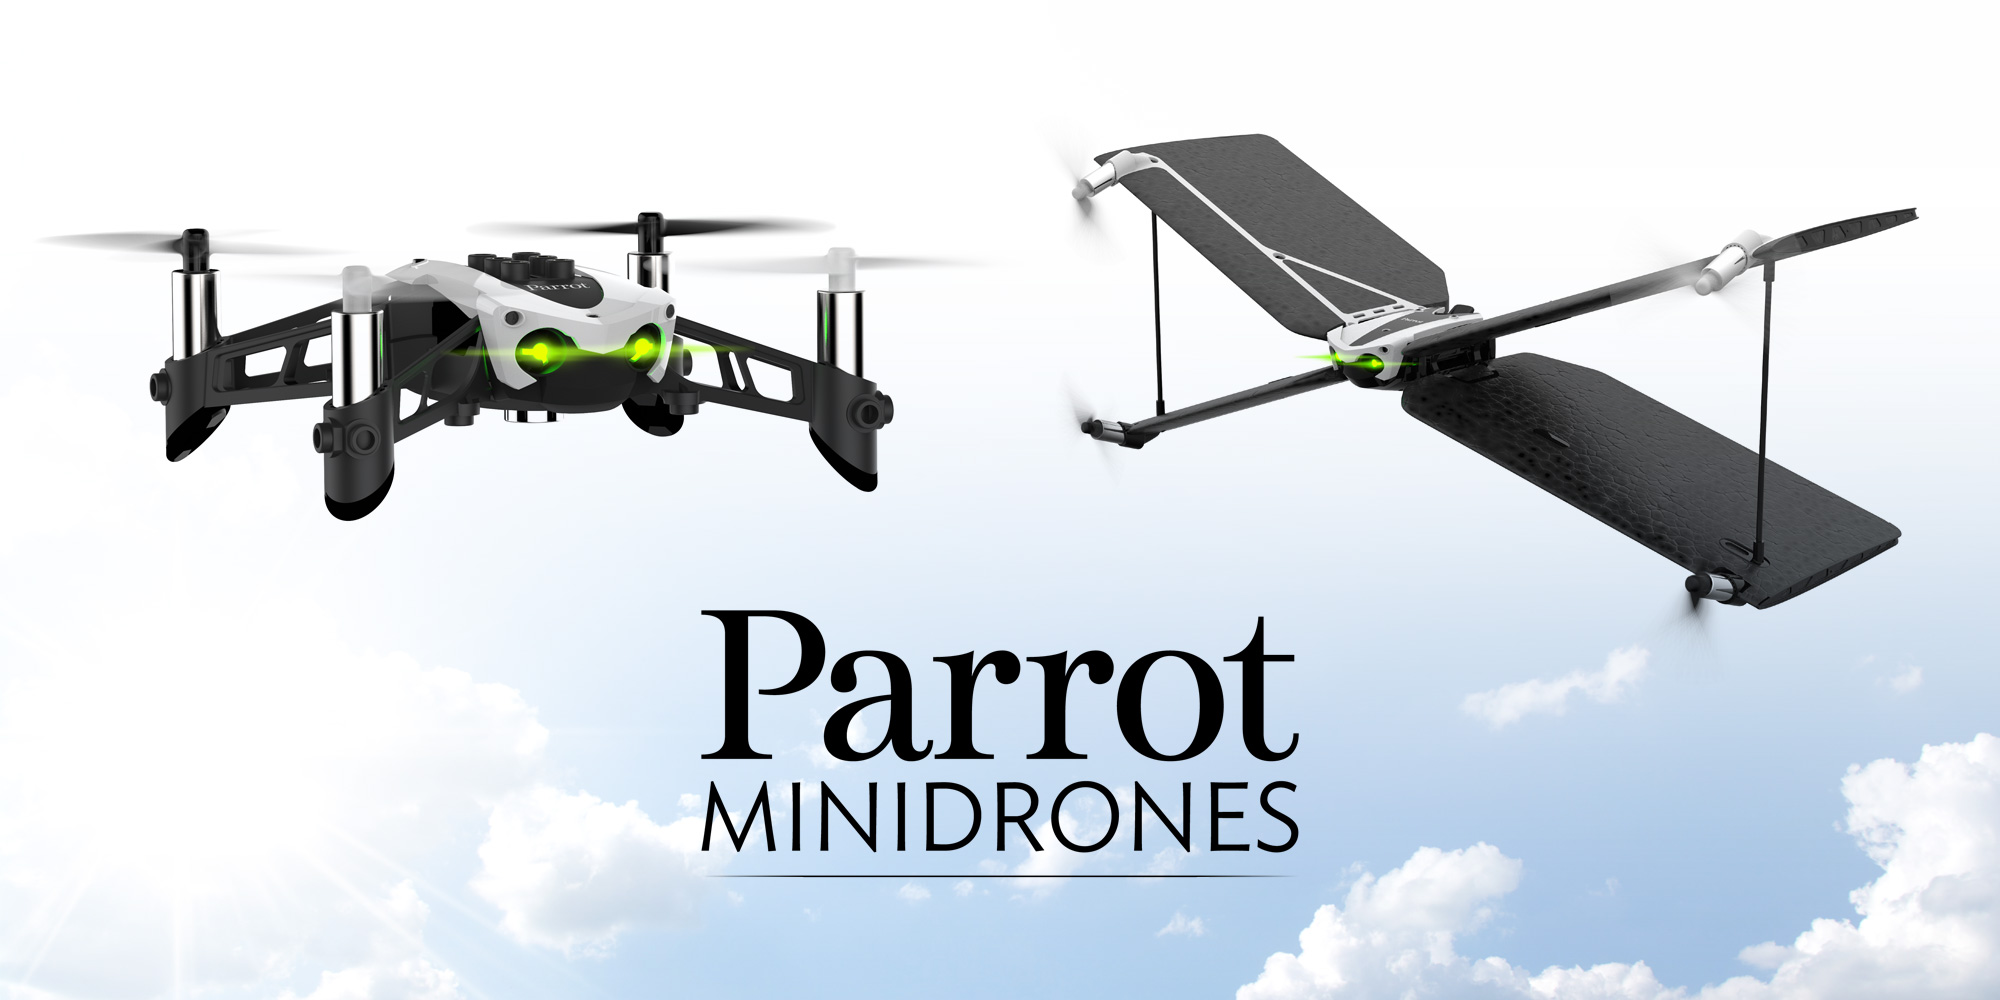  Découvrez les New MiniDrones Parrot !